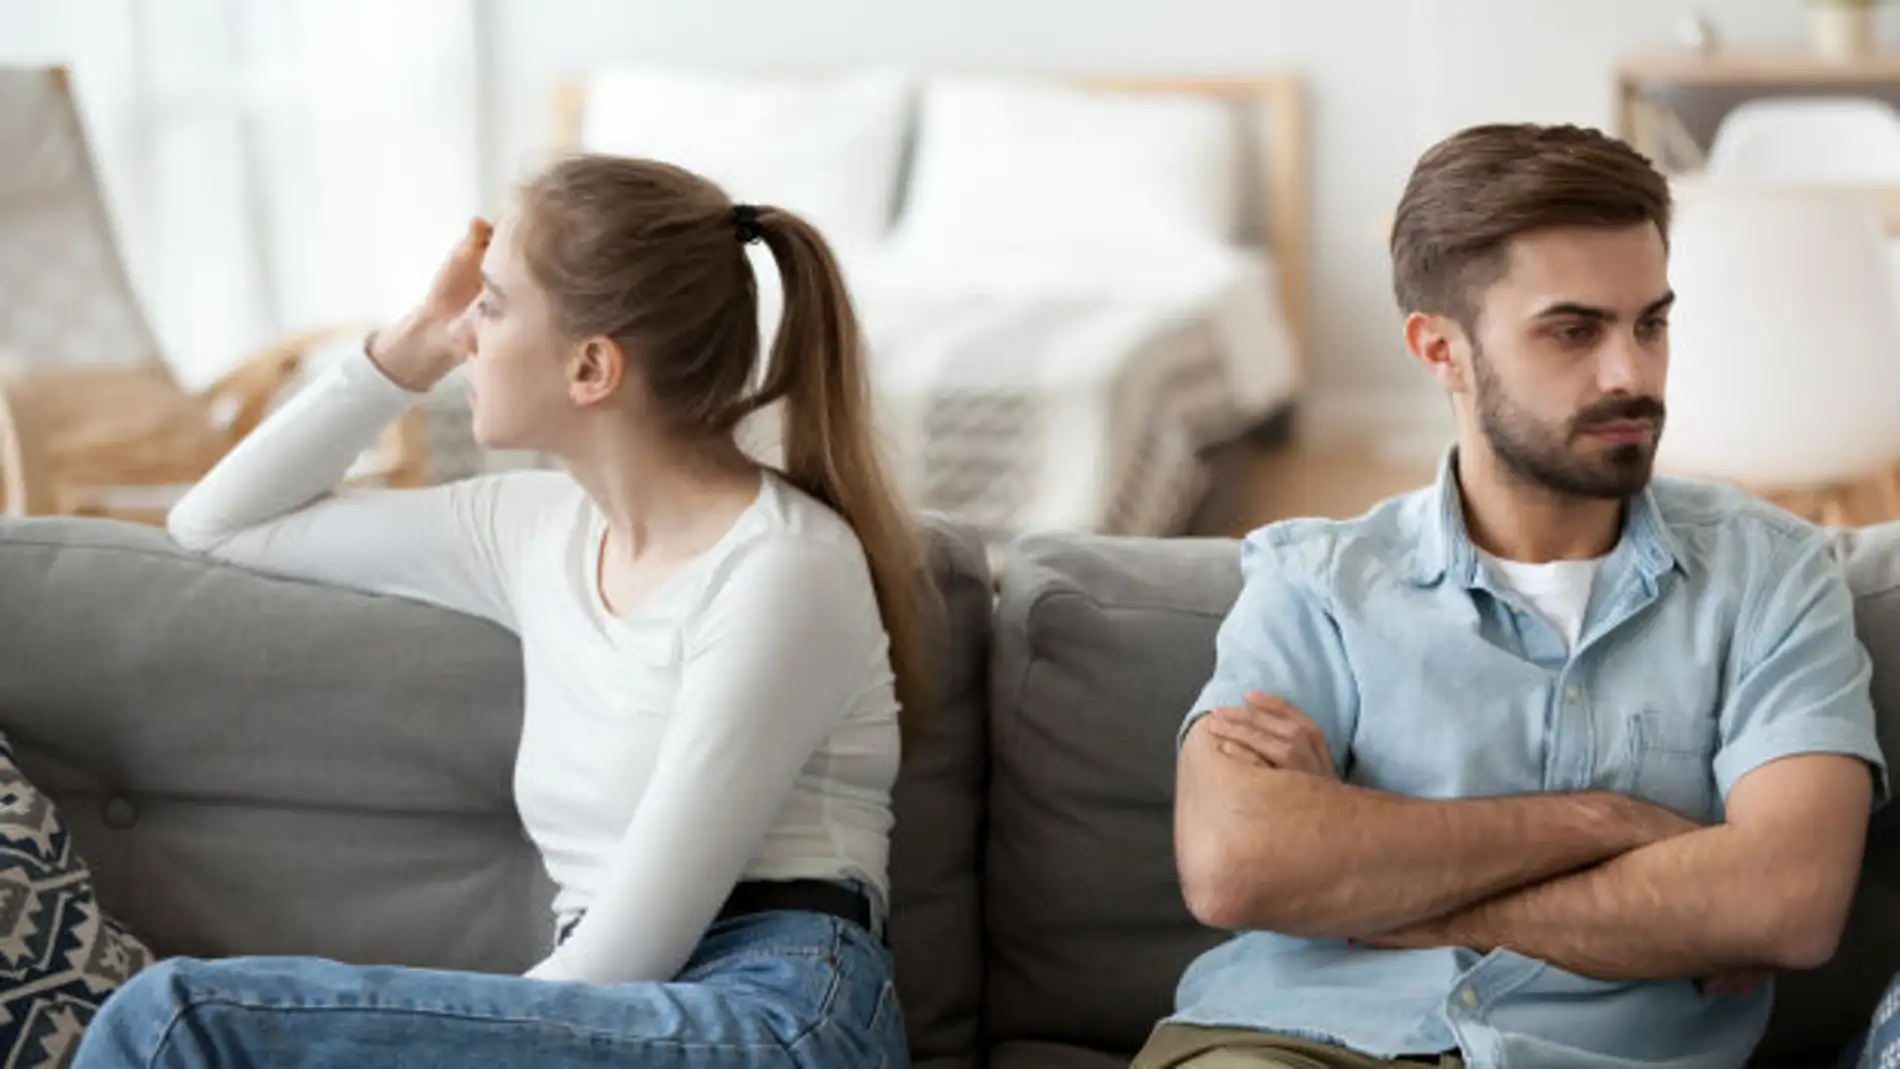 El confinamiento puede llegar a generar malestar emocional y aumentar la probabilidad de conflictos, sobre todo en parejas que viven en espacios pequeños 